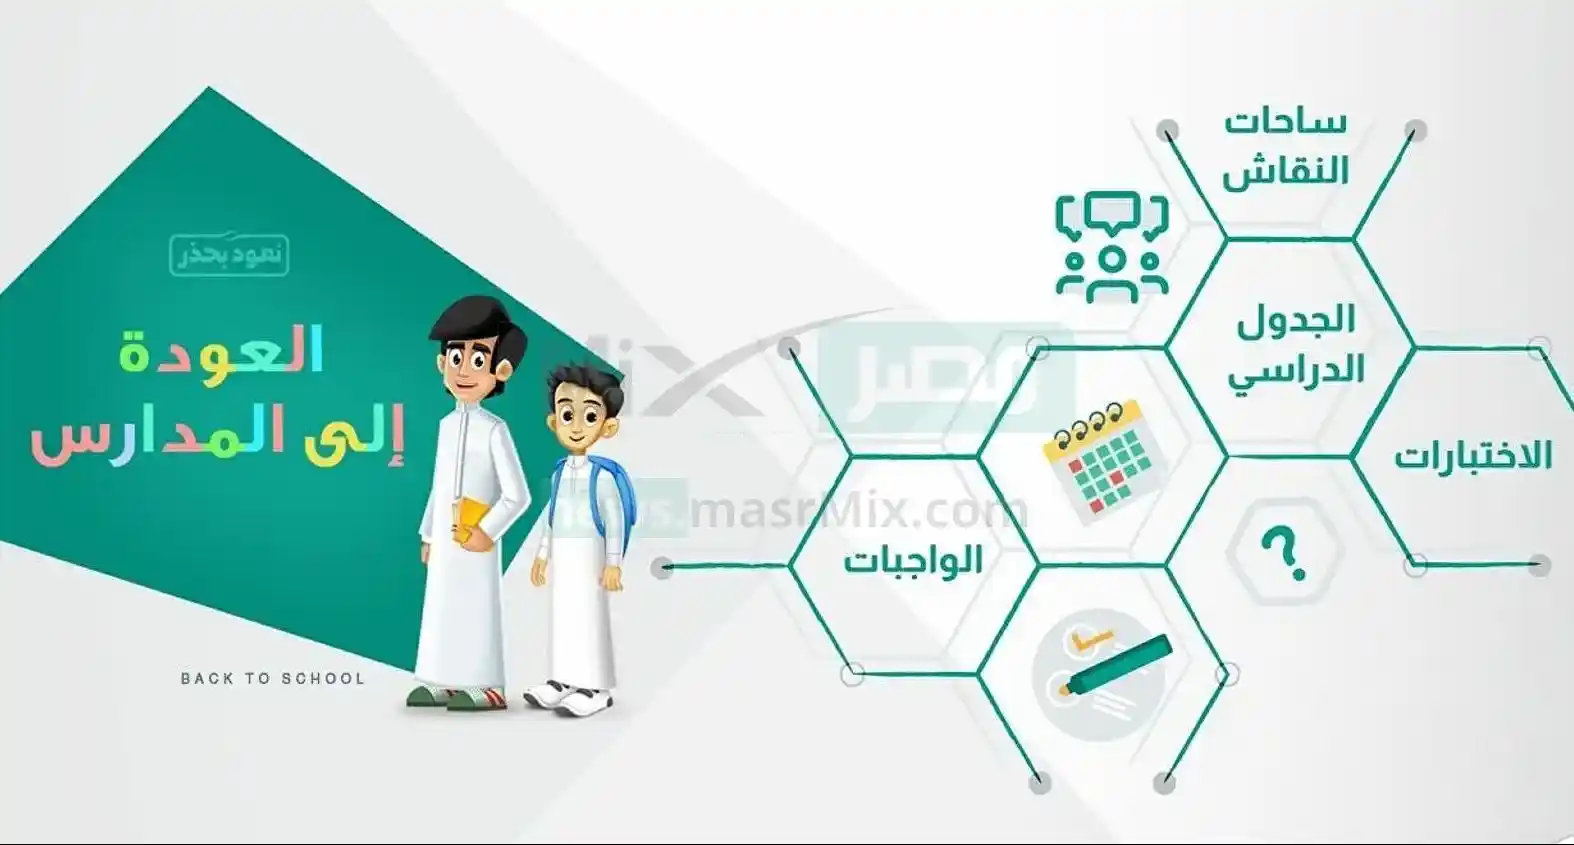 وزارة التعليم السعودي تعتمد نظام ثلاثة فصول دراسية